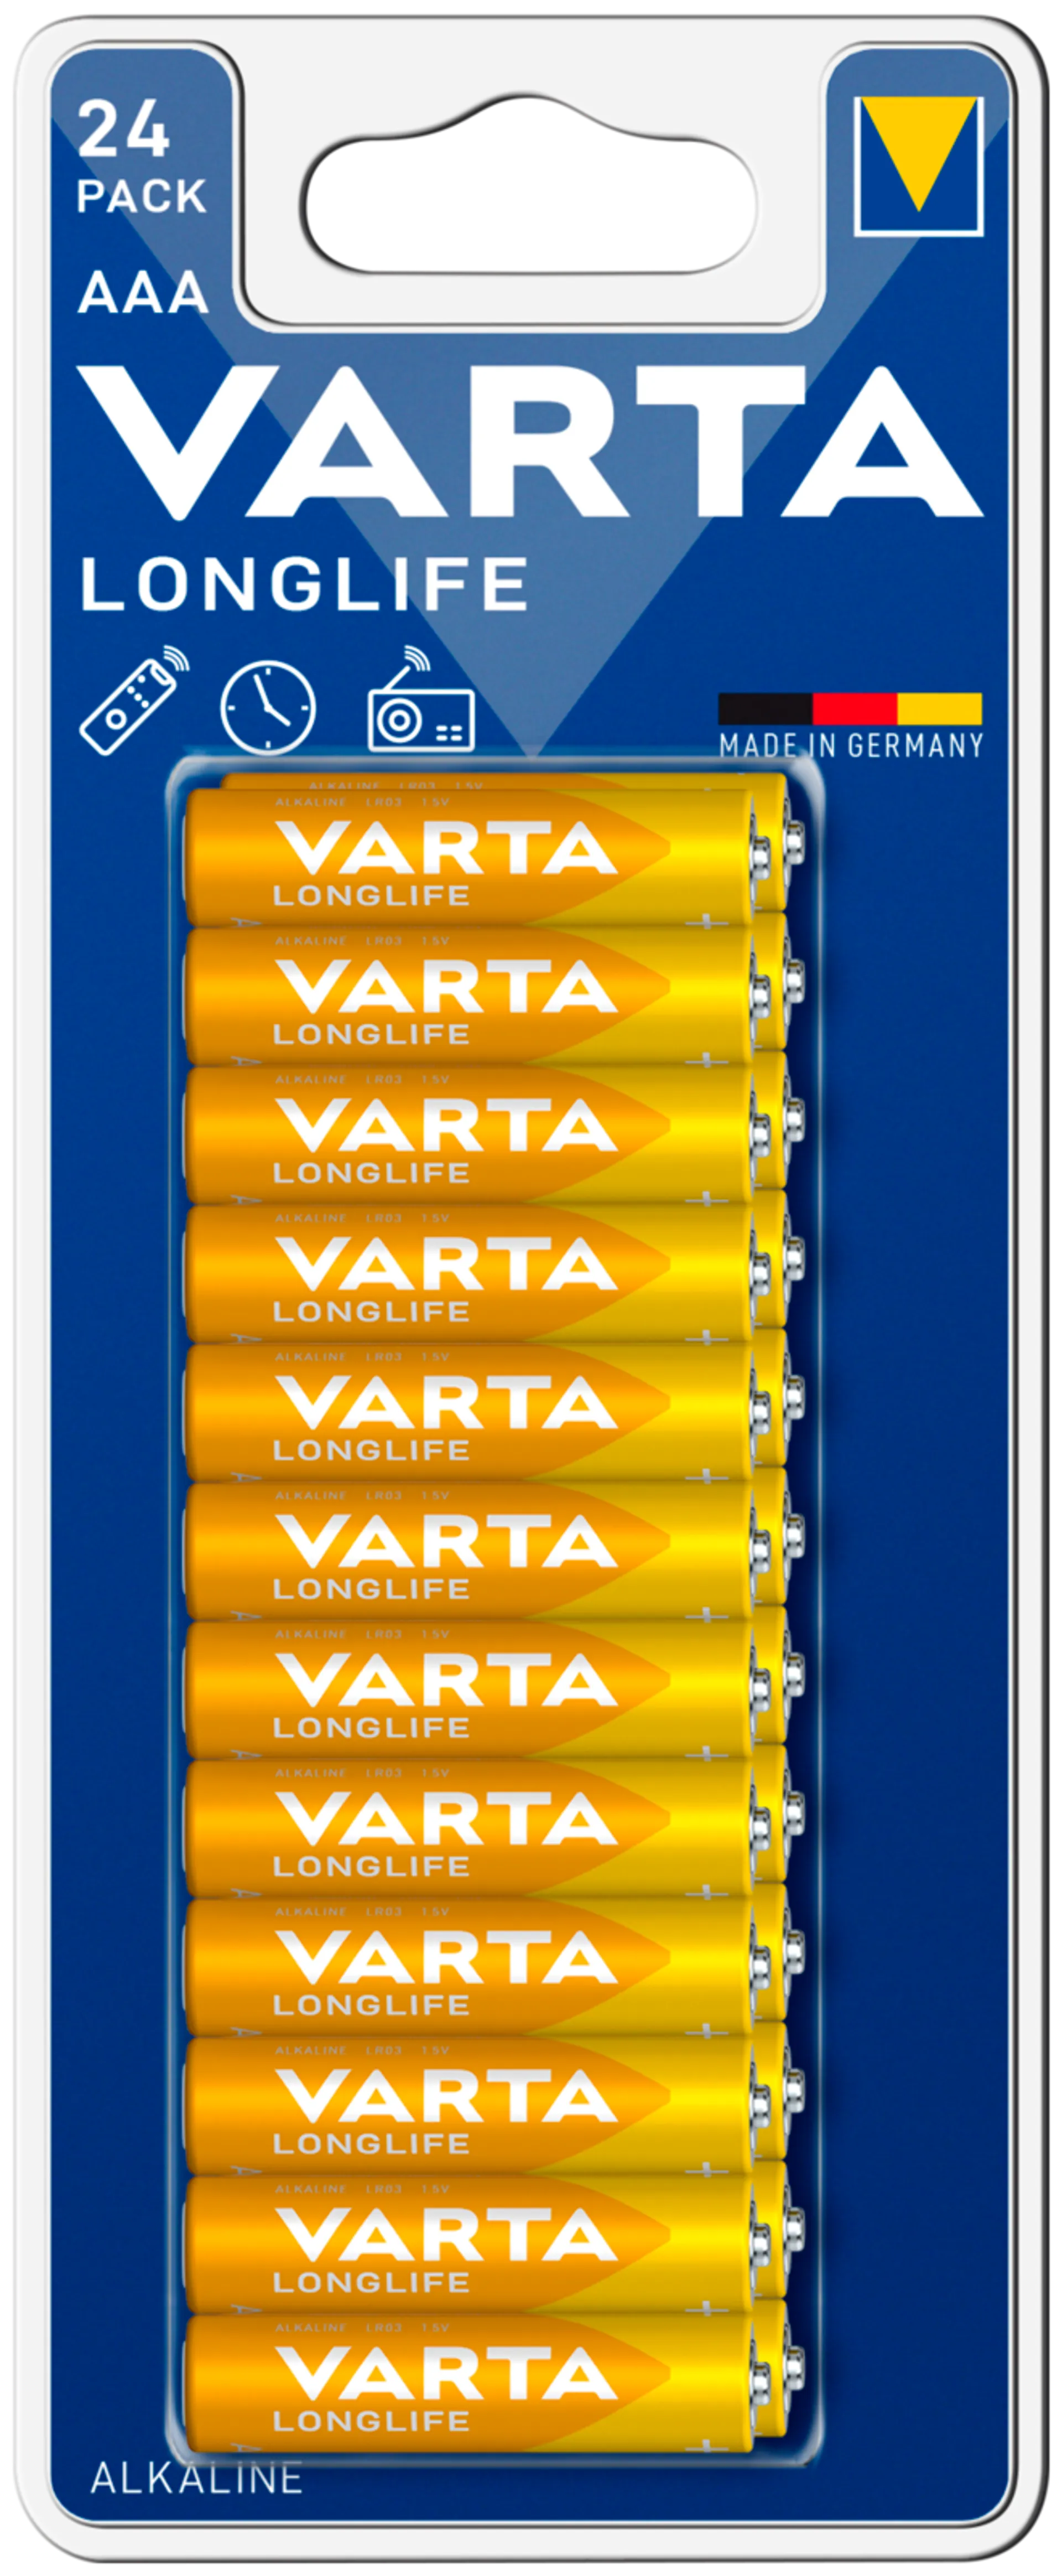 VARTA Longlife AAA 24 pack - 1